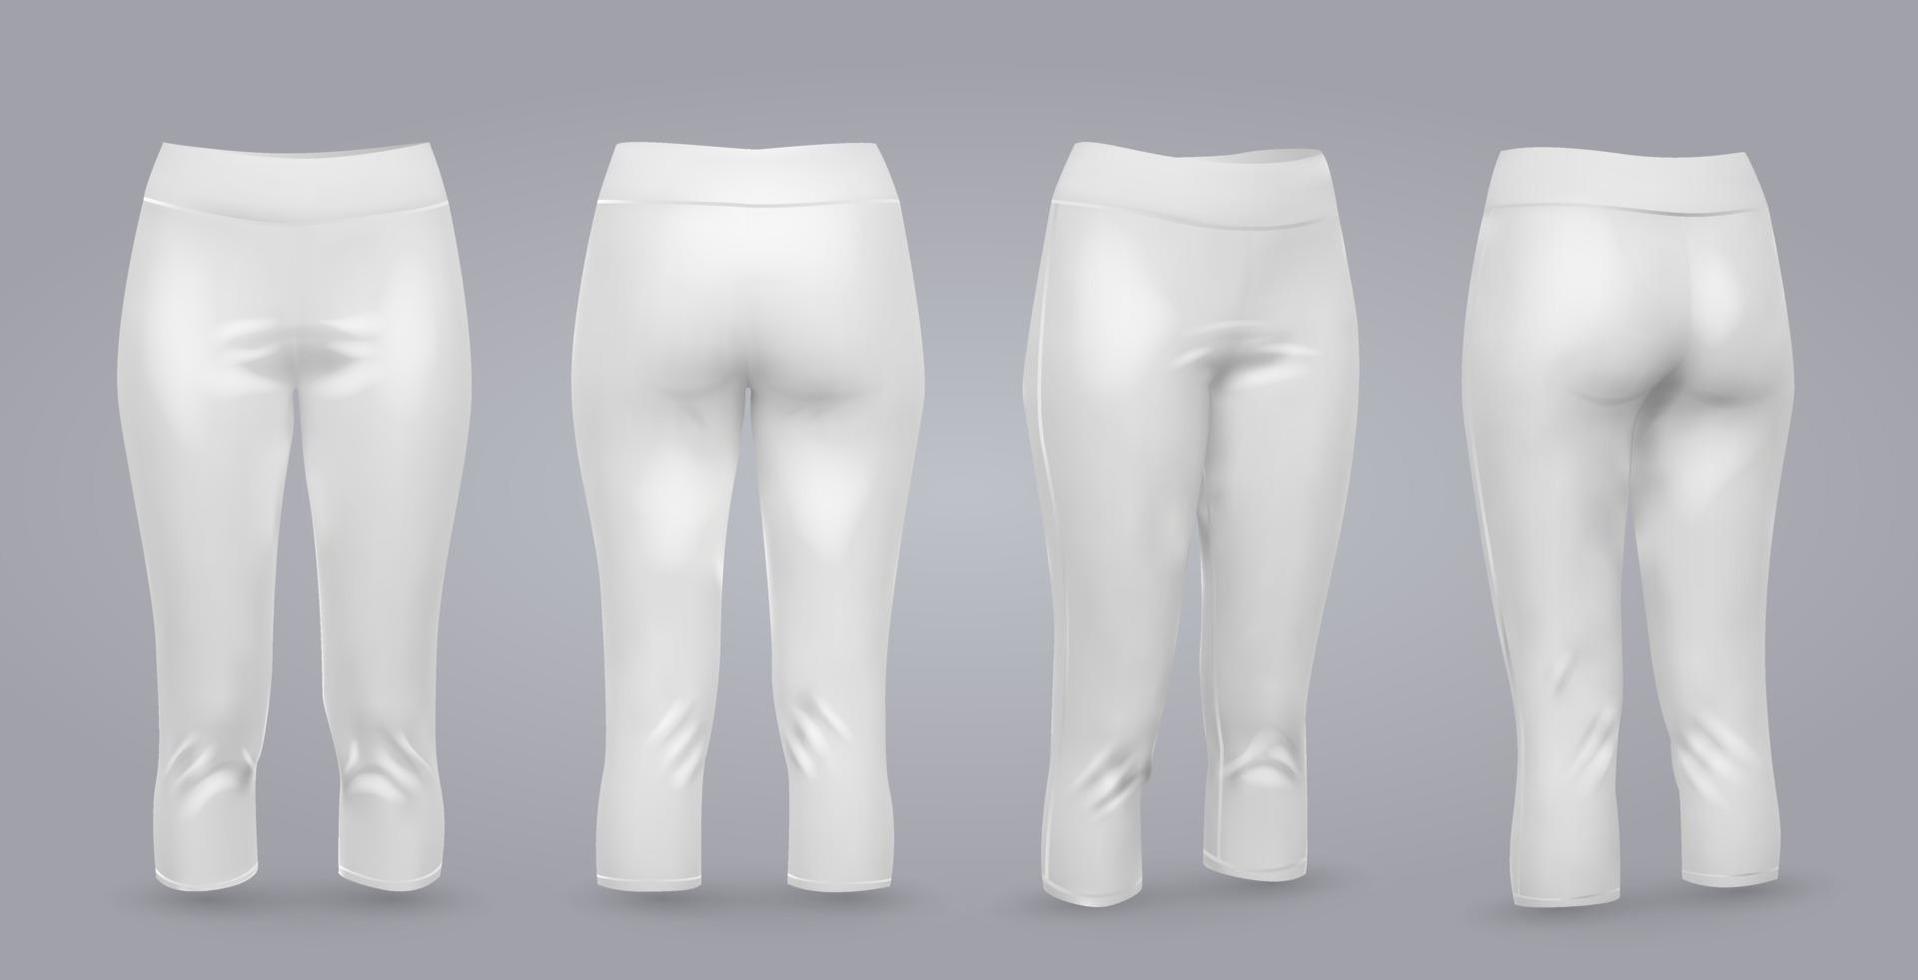 maquette de leggings femmes en vue avant et arrière, isolé sur fond gris. Illustration vectorielle réaliste 3d vecteur